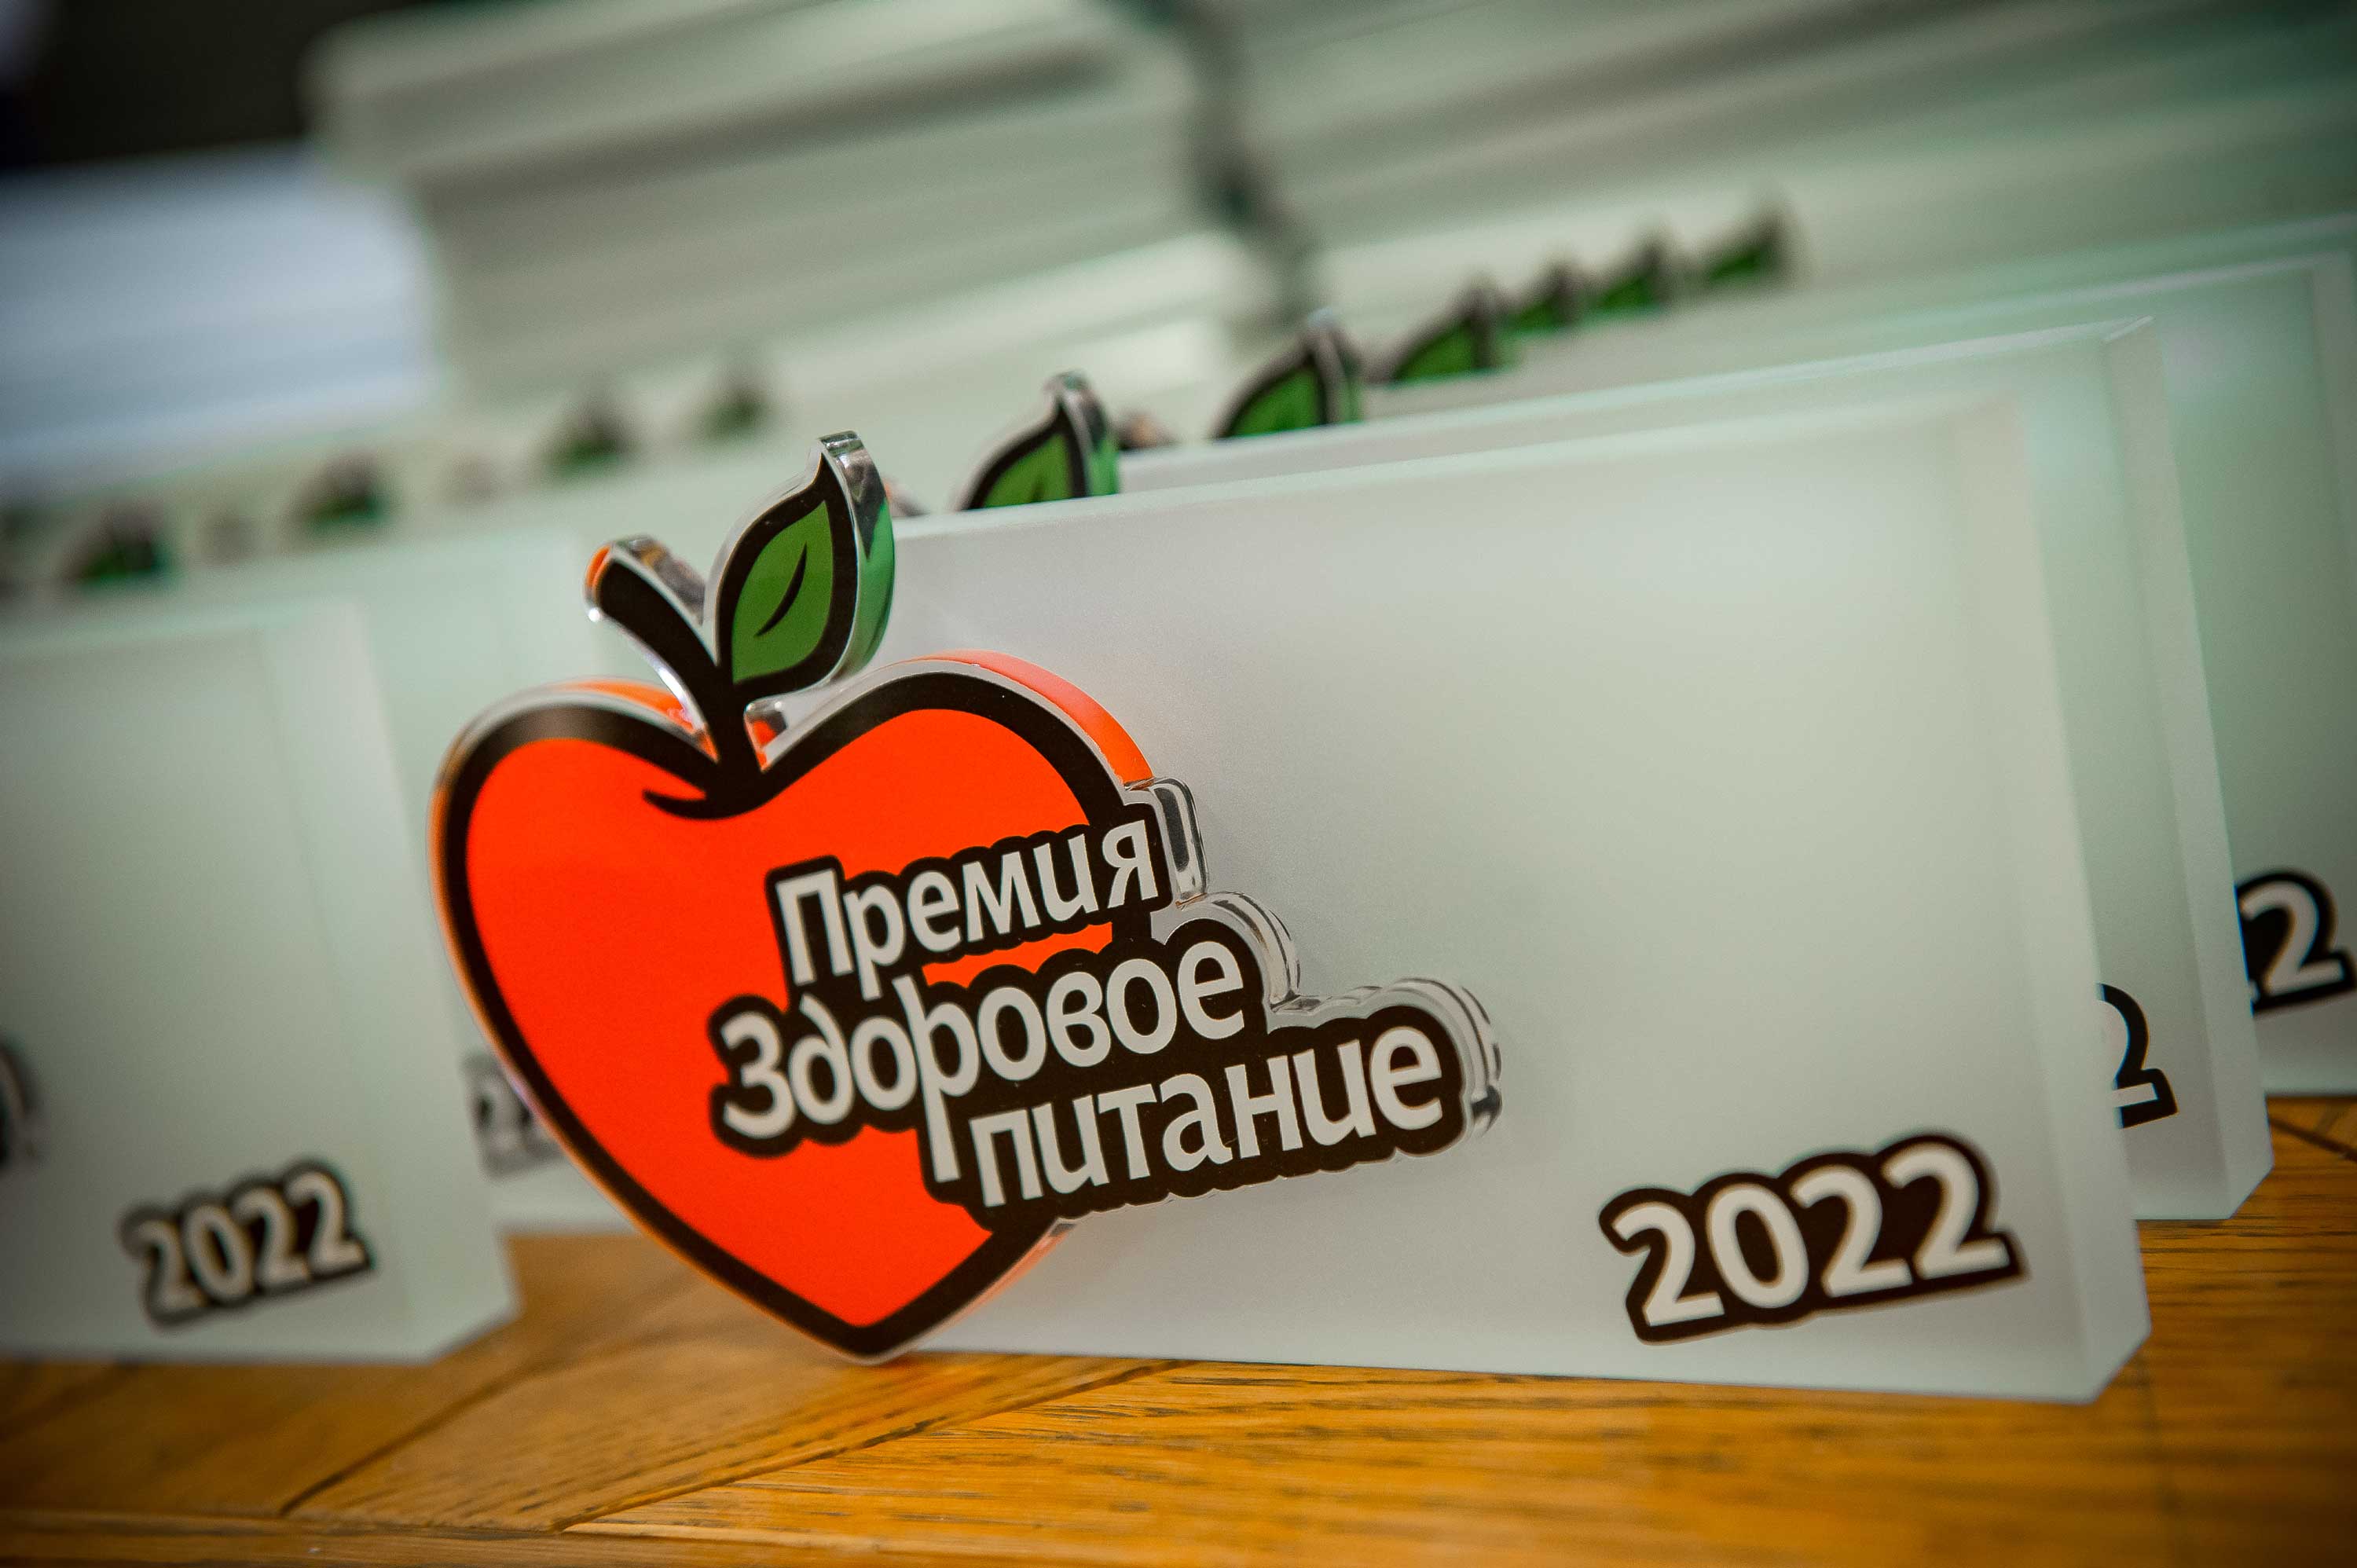 ЮЖНАЯ СОКОВАЯ КОМПАНИЯ - лауреат премии «Здоровое питание» 2022!